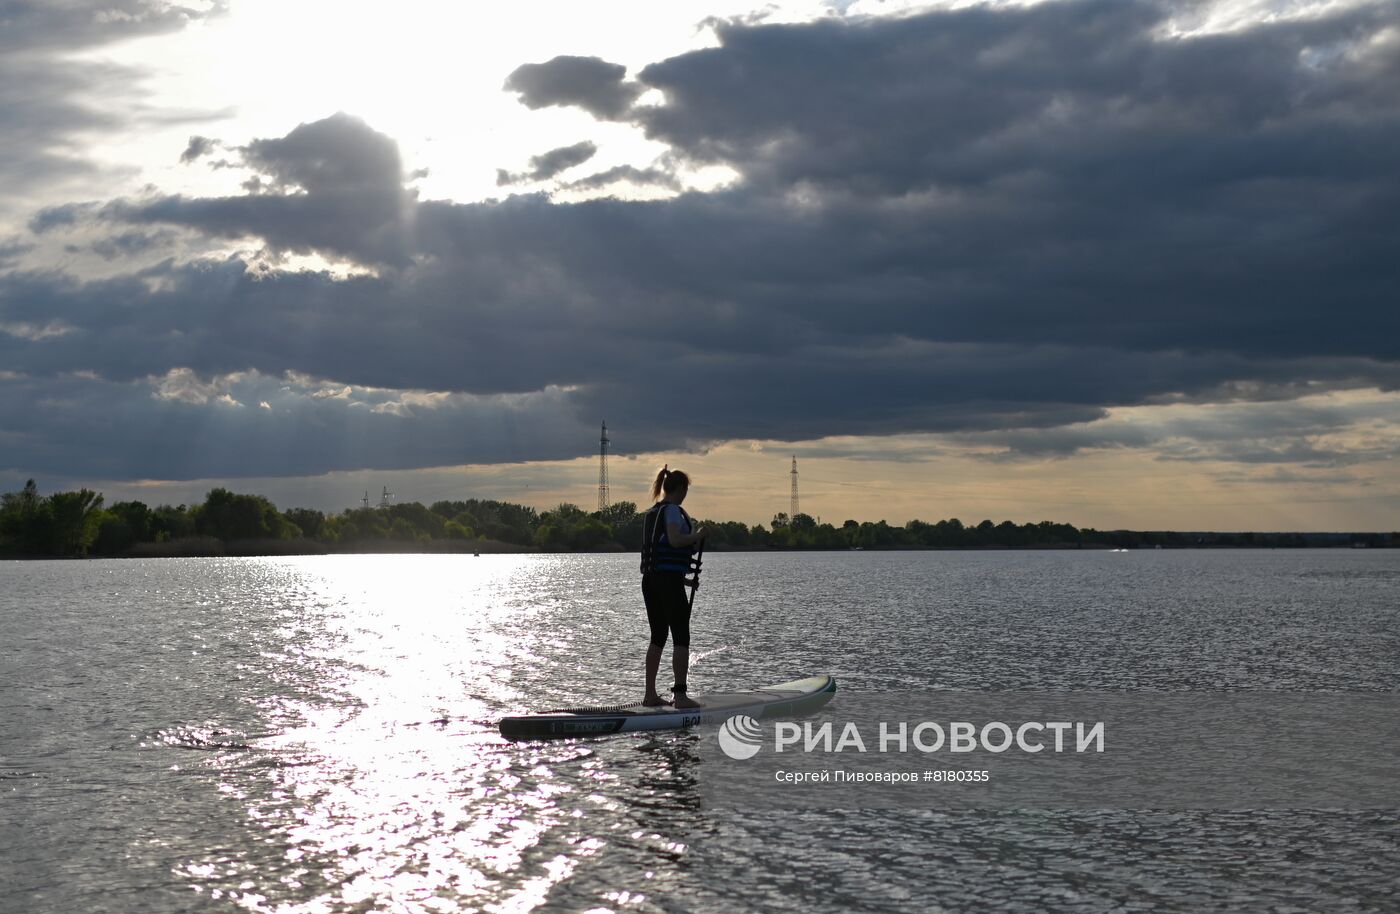 Открытие сезона sup-серфинга в Ростовской области